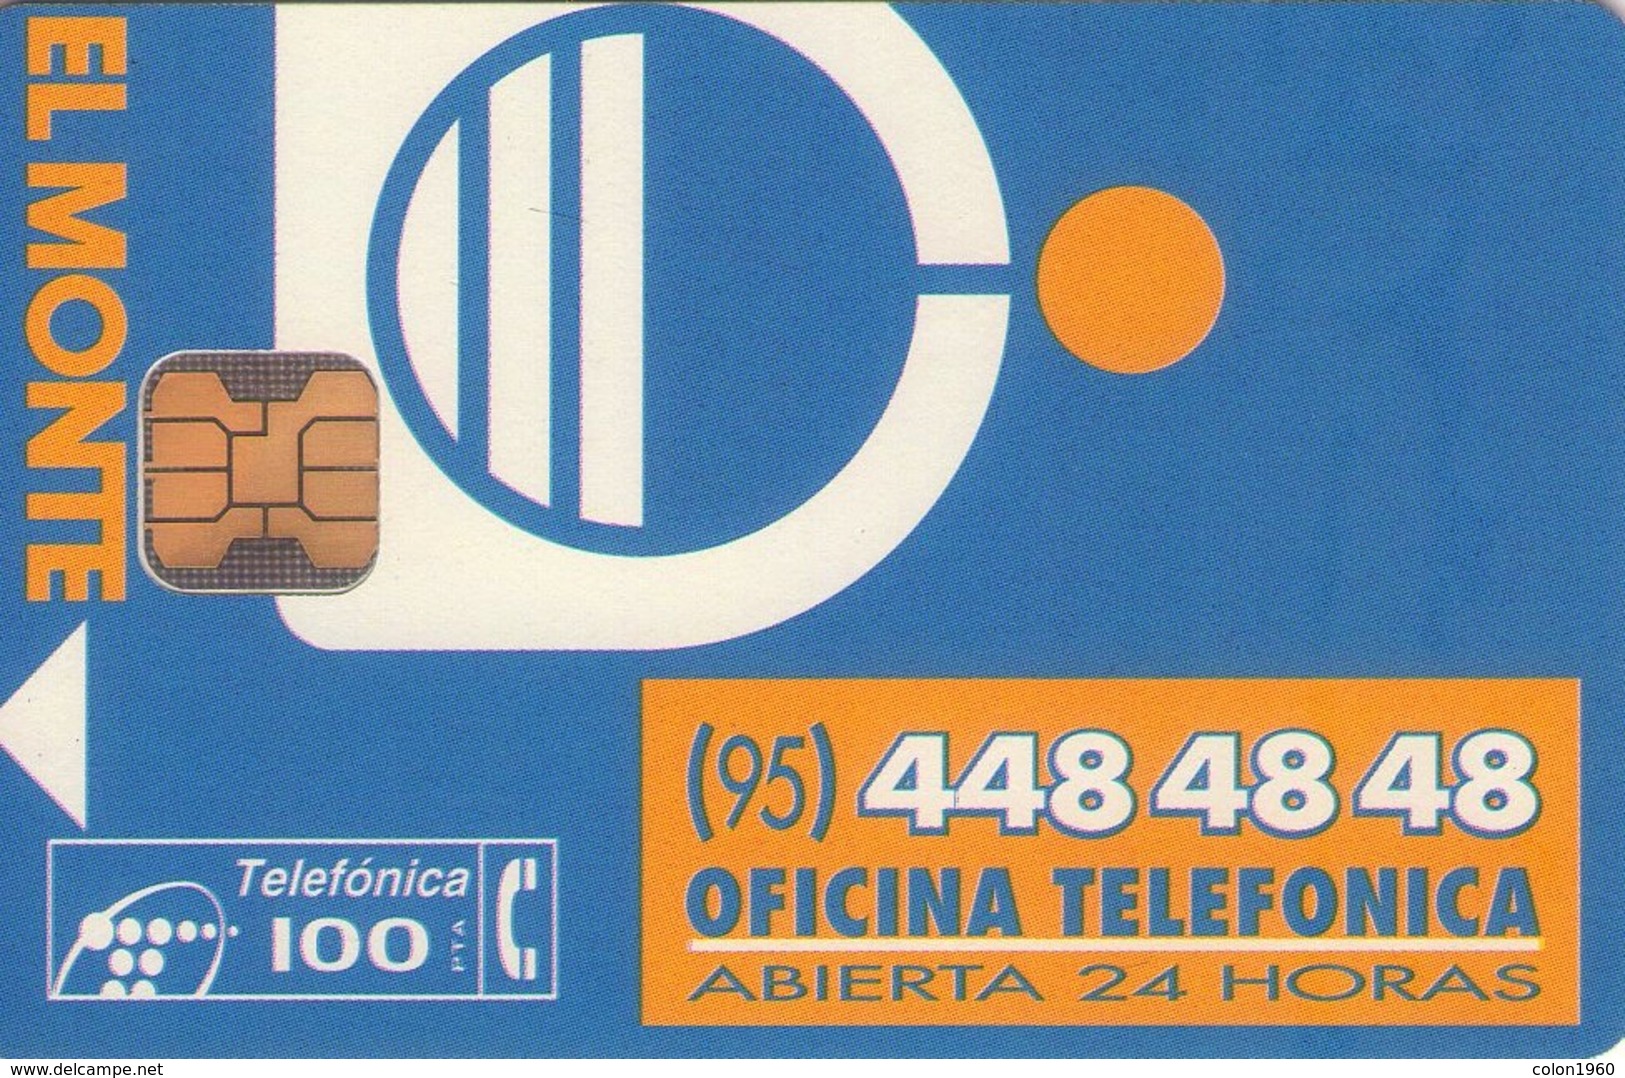 ESPAÑA. P-106. EL MONTE. 1994-12. 33100 Ex. MINT. (433). - Emissions Privées